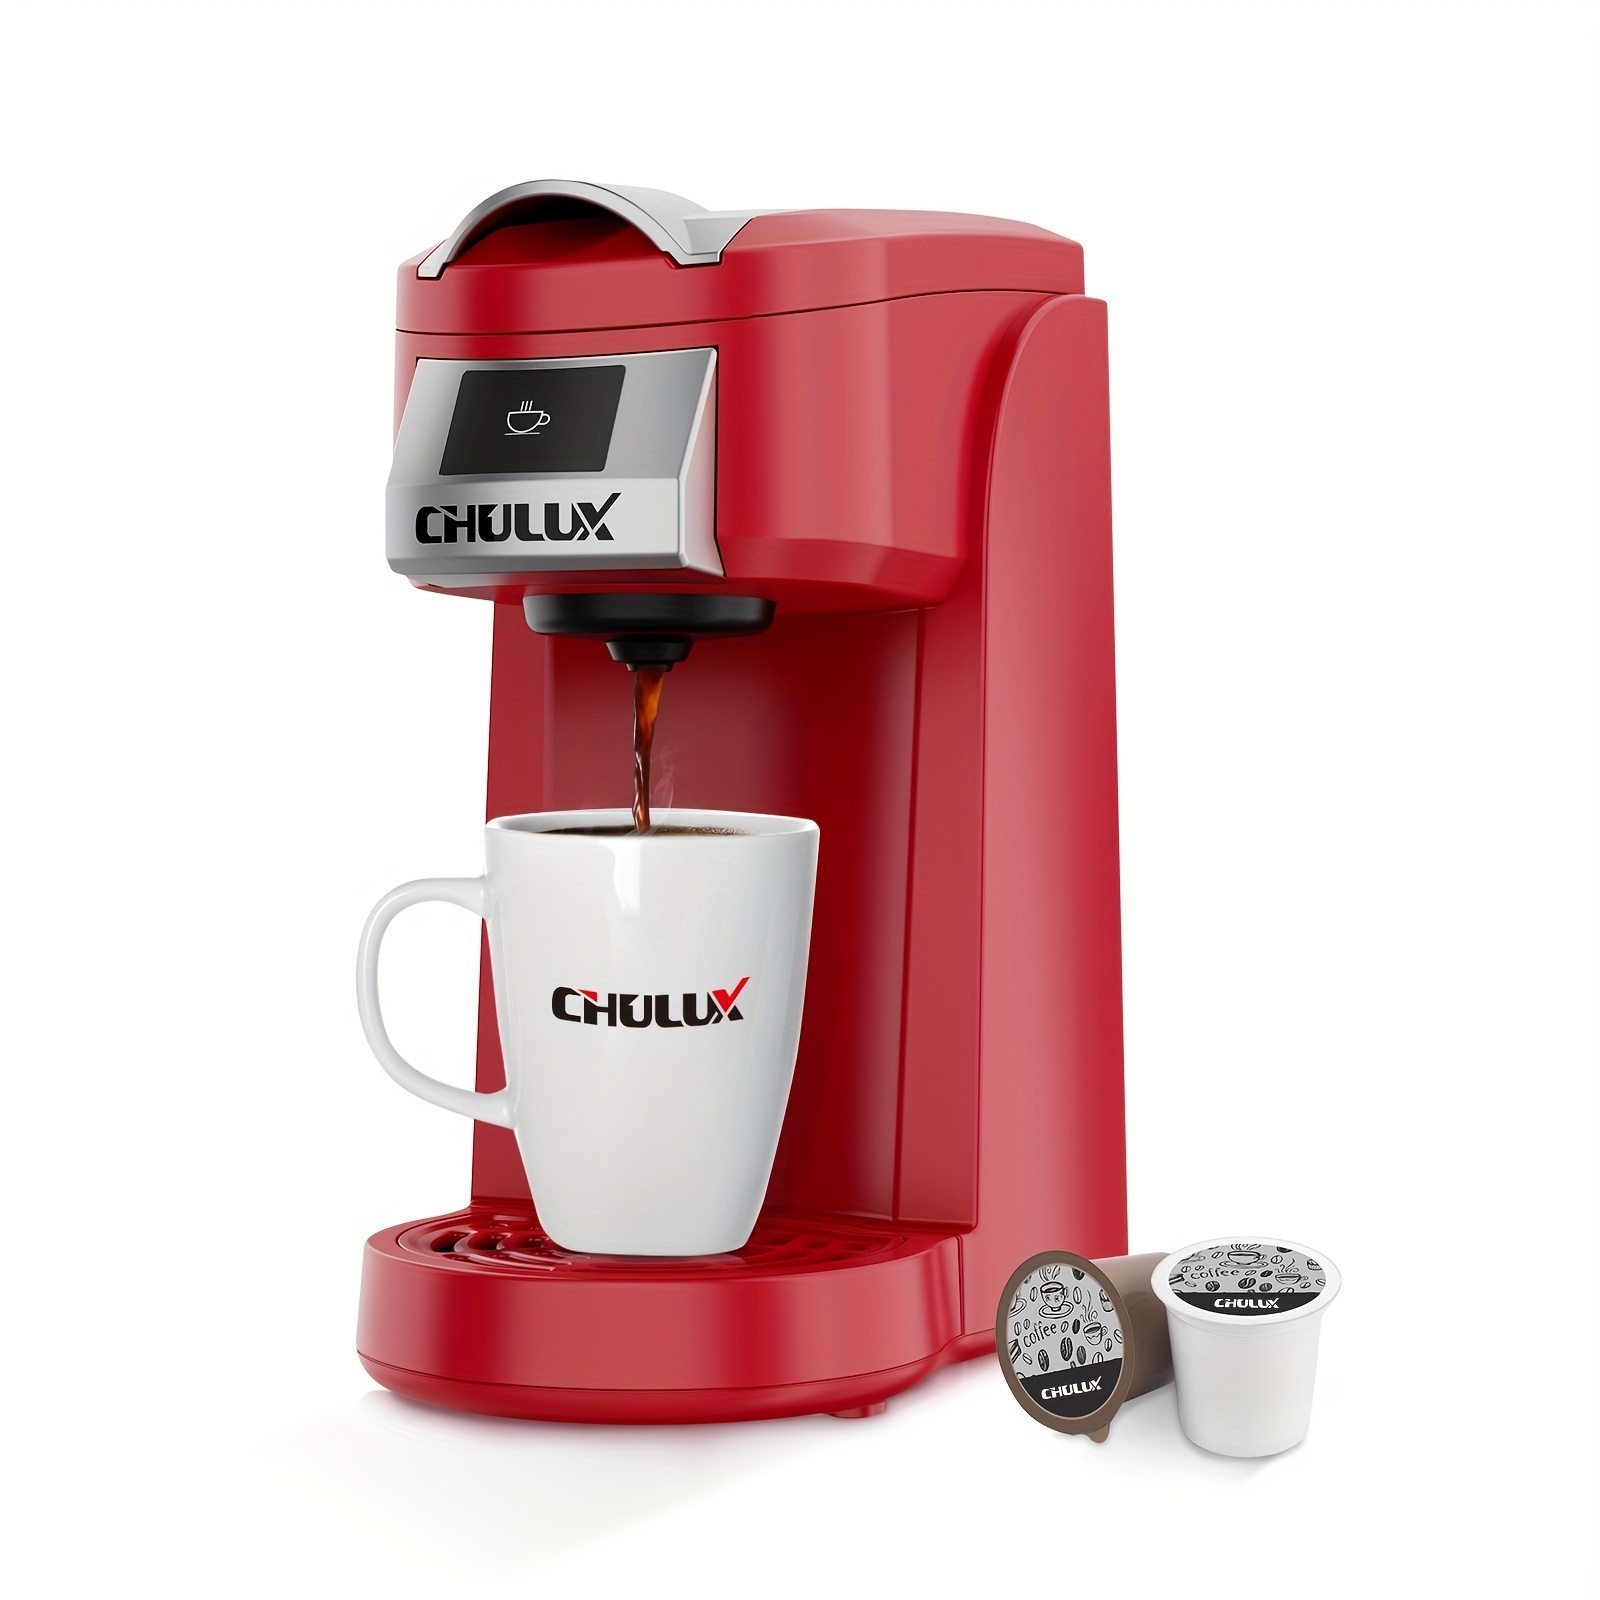 Keurig Coffee Travel Mug, Fits Under Any Keurig K-Cup Pod Coffee Maker, 14  oz, Red